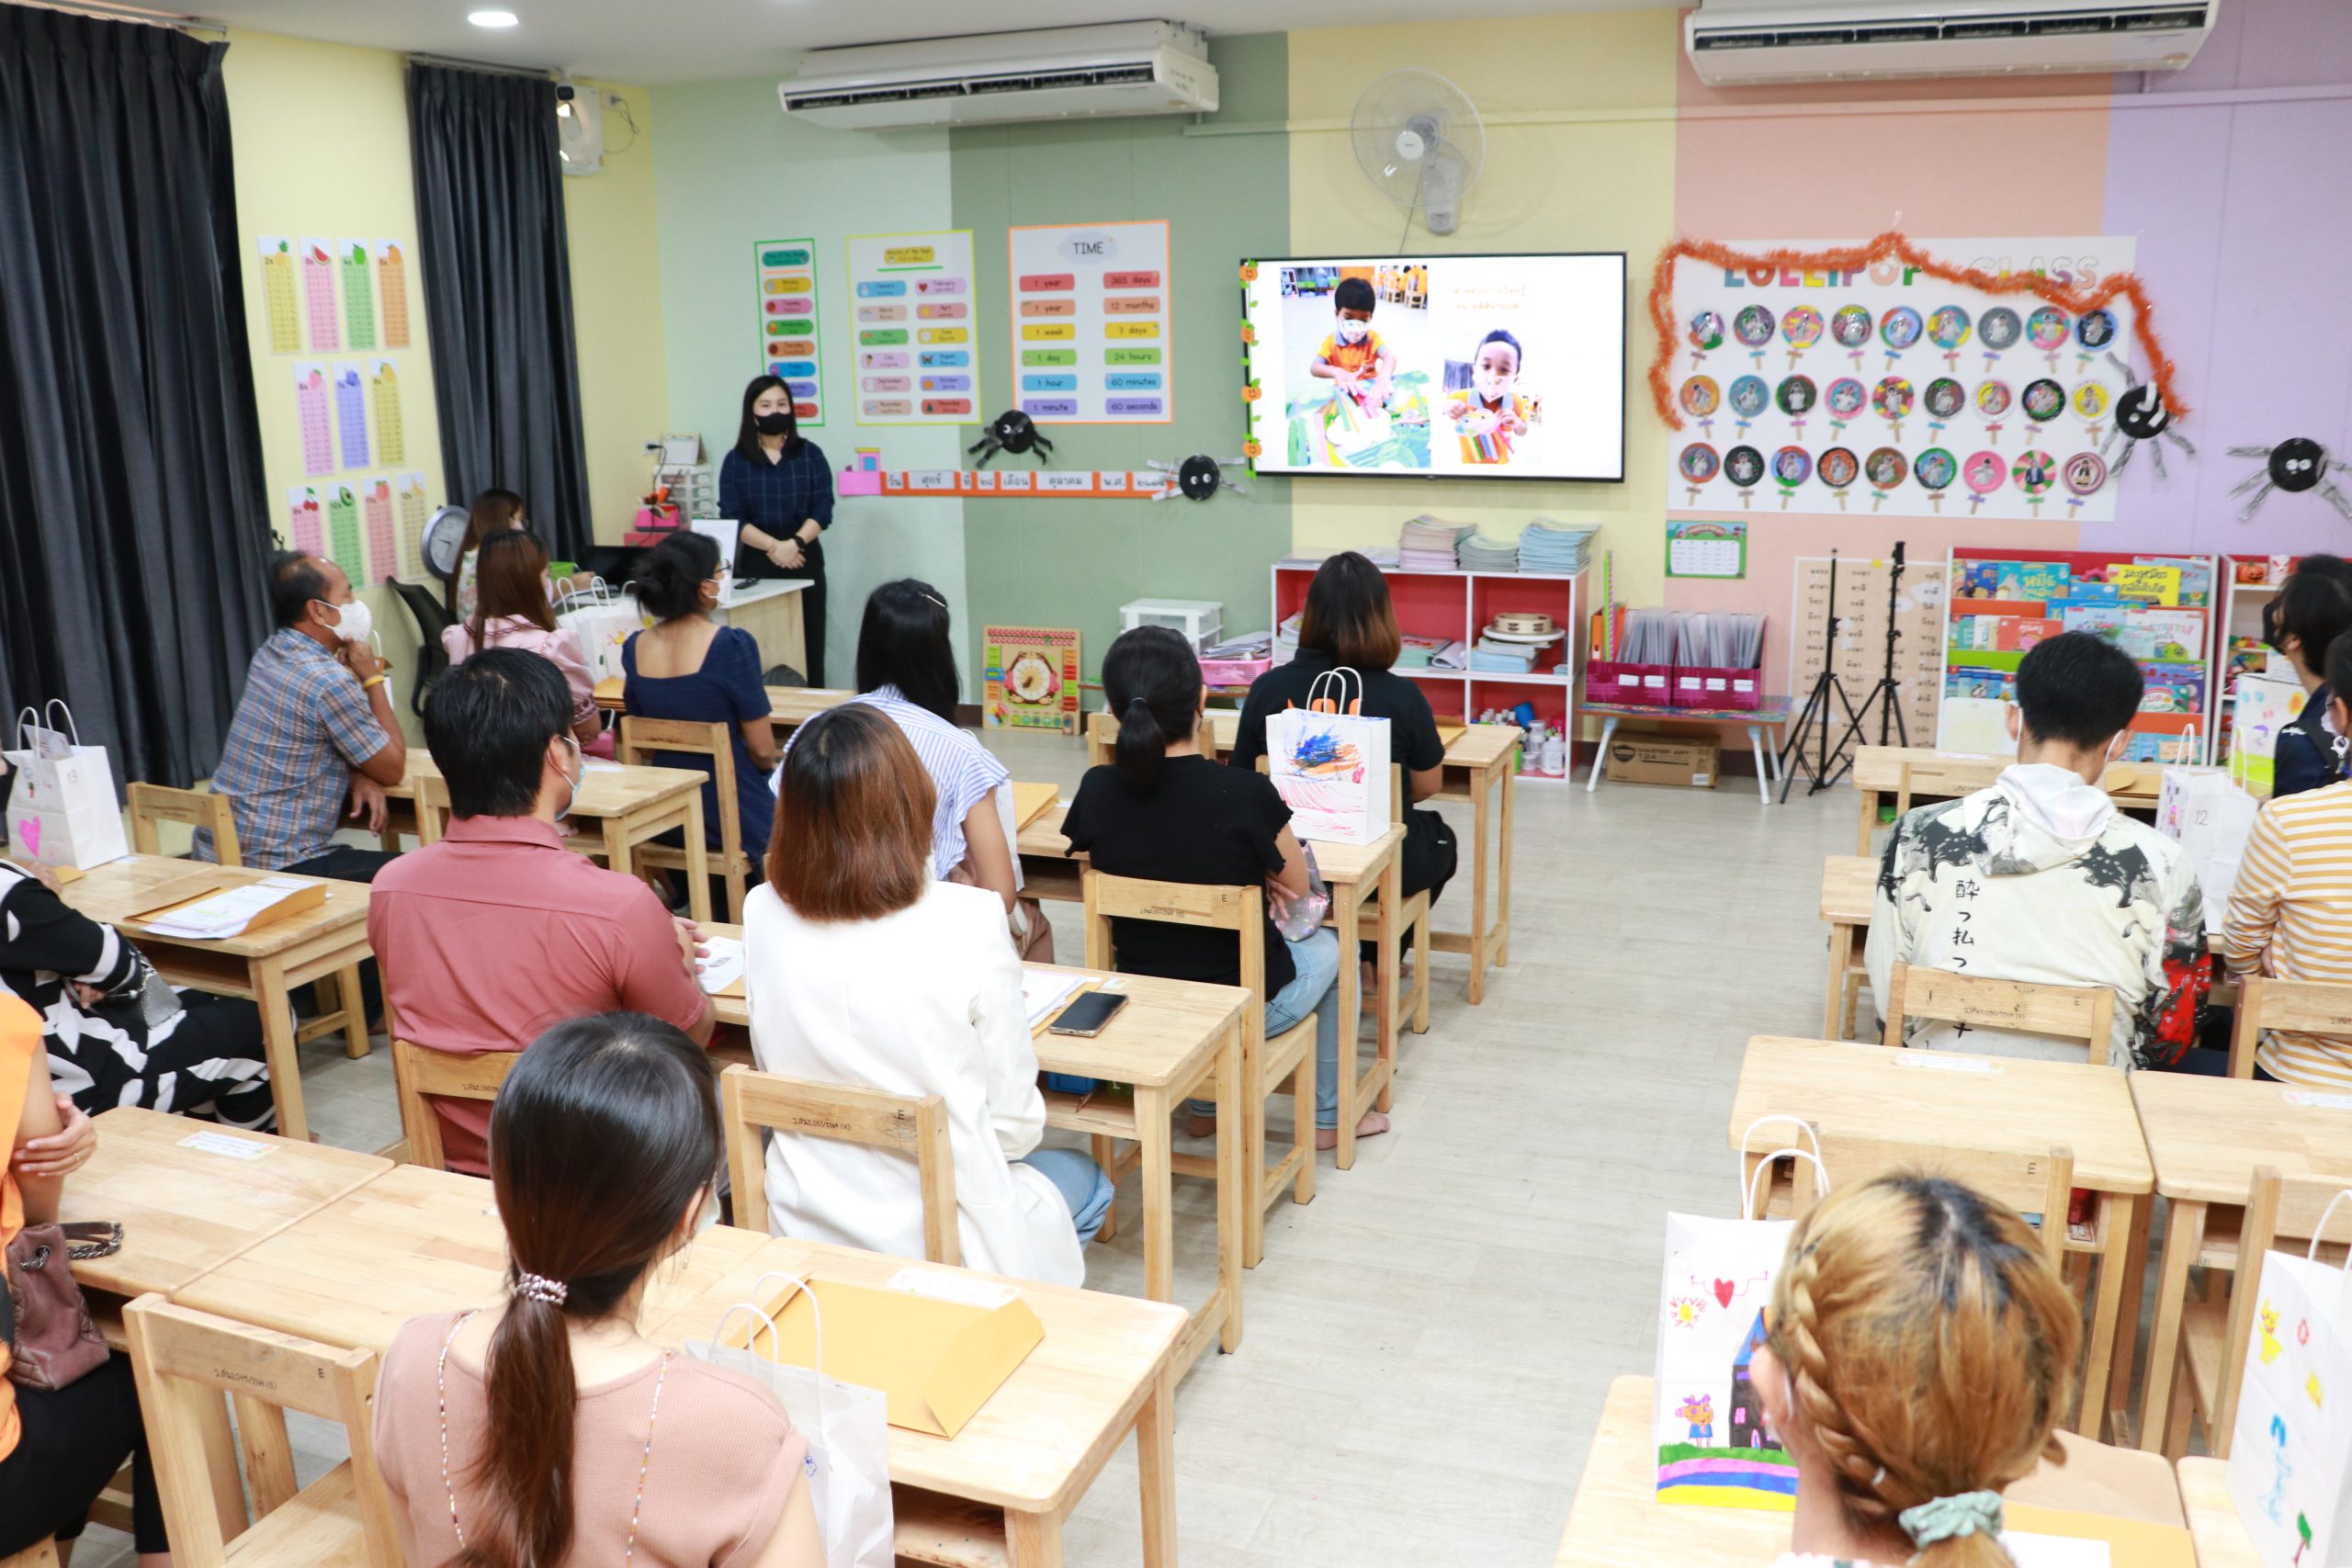 ประมวลภาพกิจกรรม “ผู้ปกครองพบครูเพื่อลูกรัก Kindergarten Parents Meeting Day”